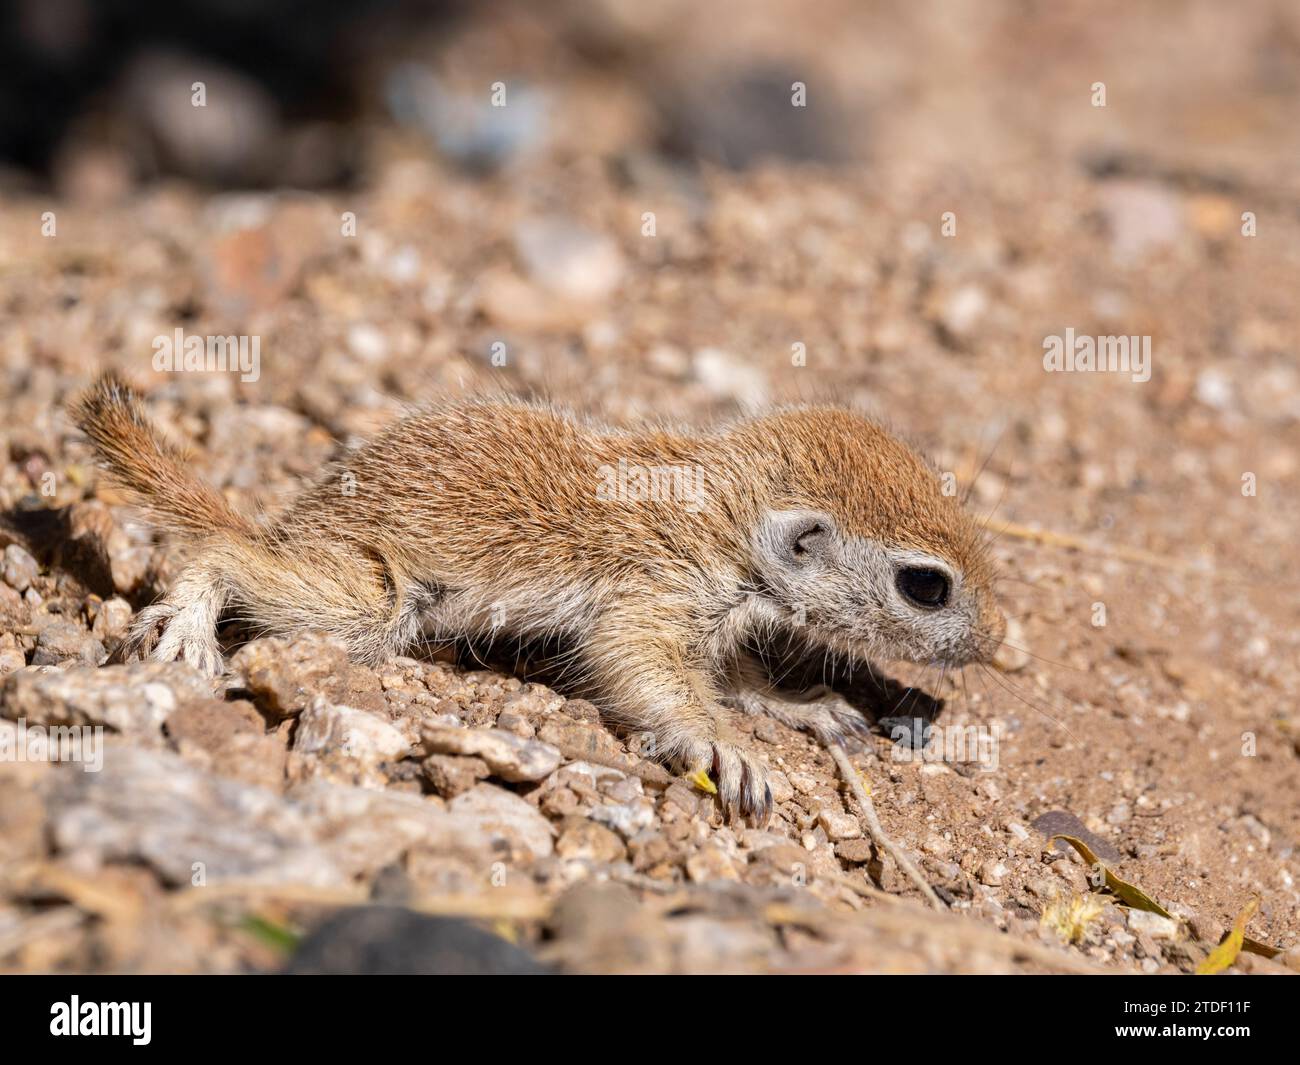 Round-tailed ground squirrel (Xerospermophilus tereticaudus), Brandi Fenton Park, Tucson, Arizona, United States of America, North America Stock Photo